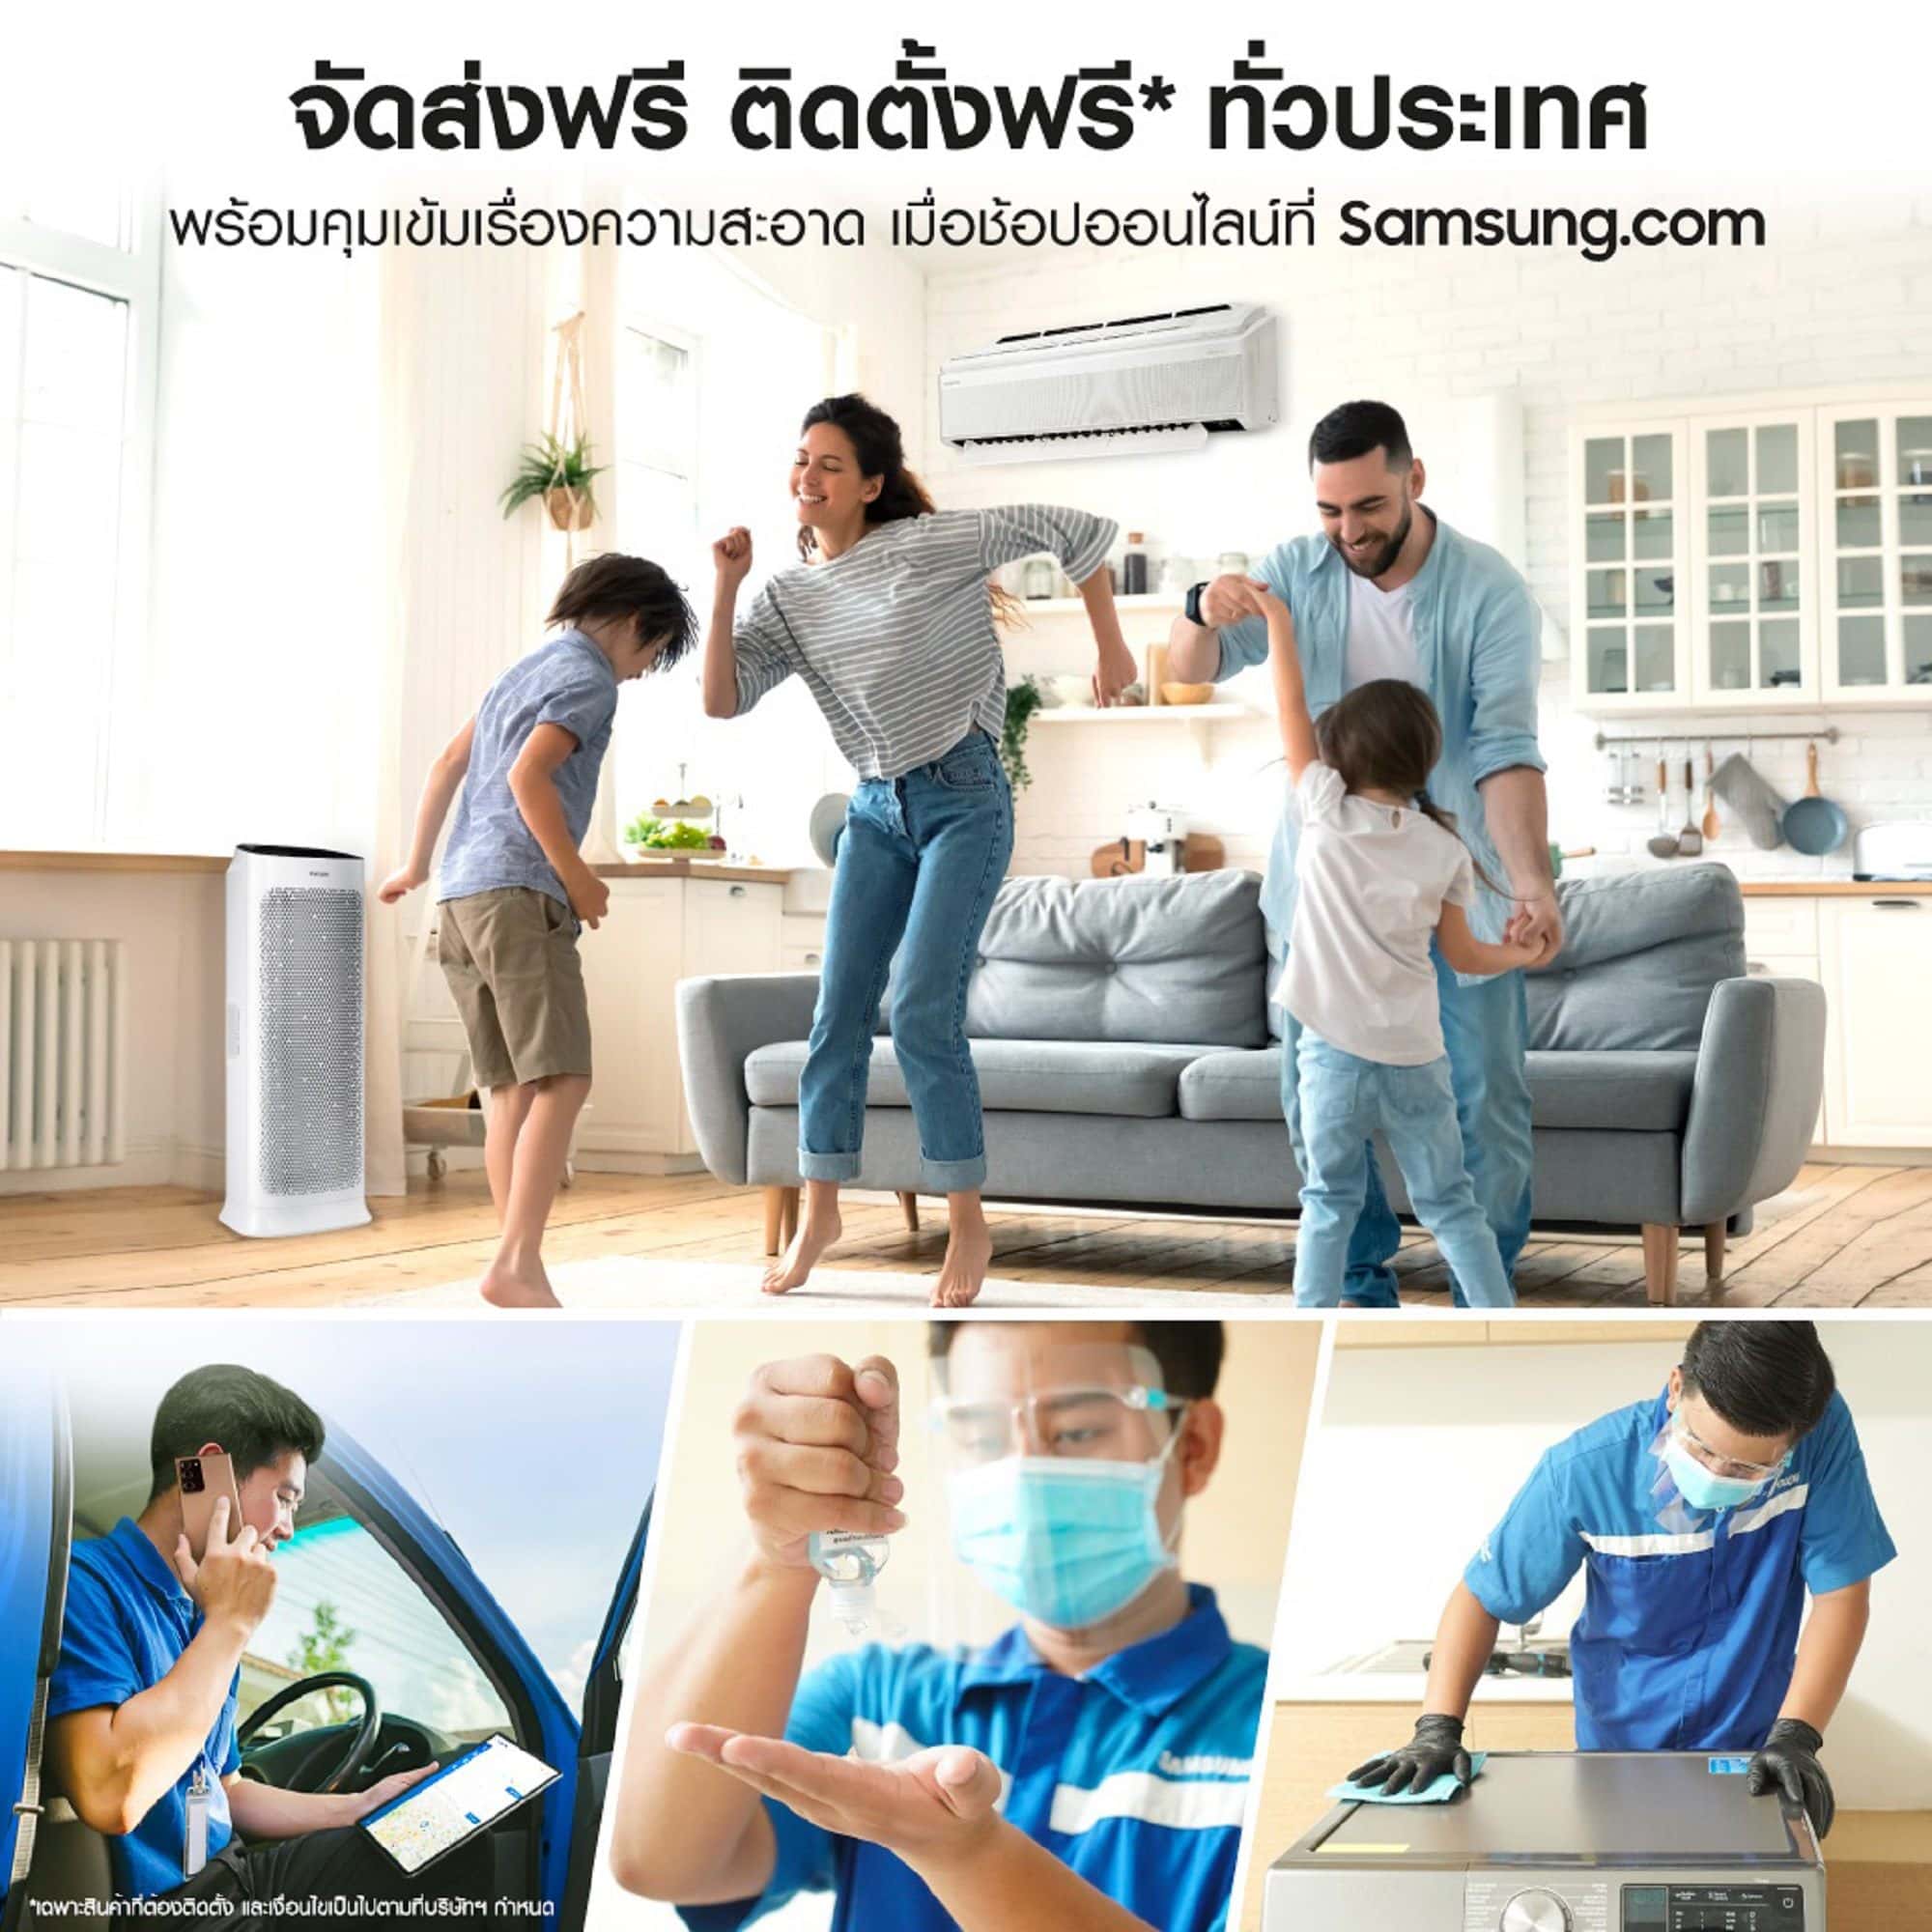 อยู่บ้านก็ช้อปได้! ซัมซุงแนะนำบริการใหม่ ‘ส่งฟรี ติดตั้งฟรี ทั่วประเทศ’ พร้อมคุมเข้มด้านความสะอาด เมื่อซื้อผ่าน Samsung.com เท่านั้น 1